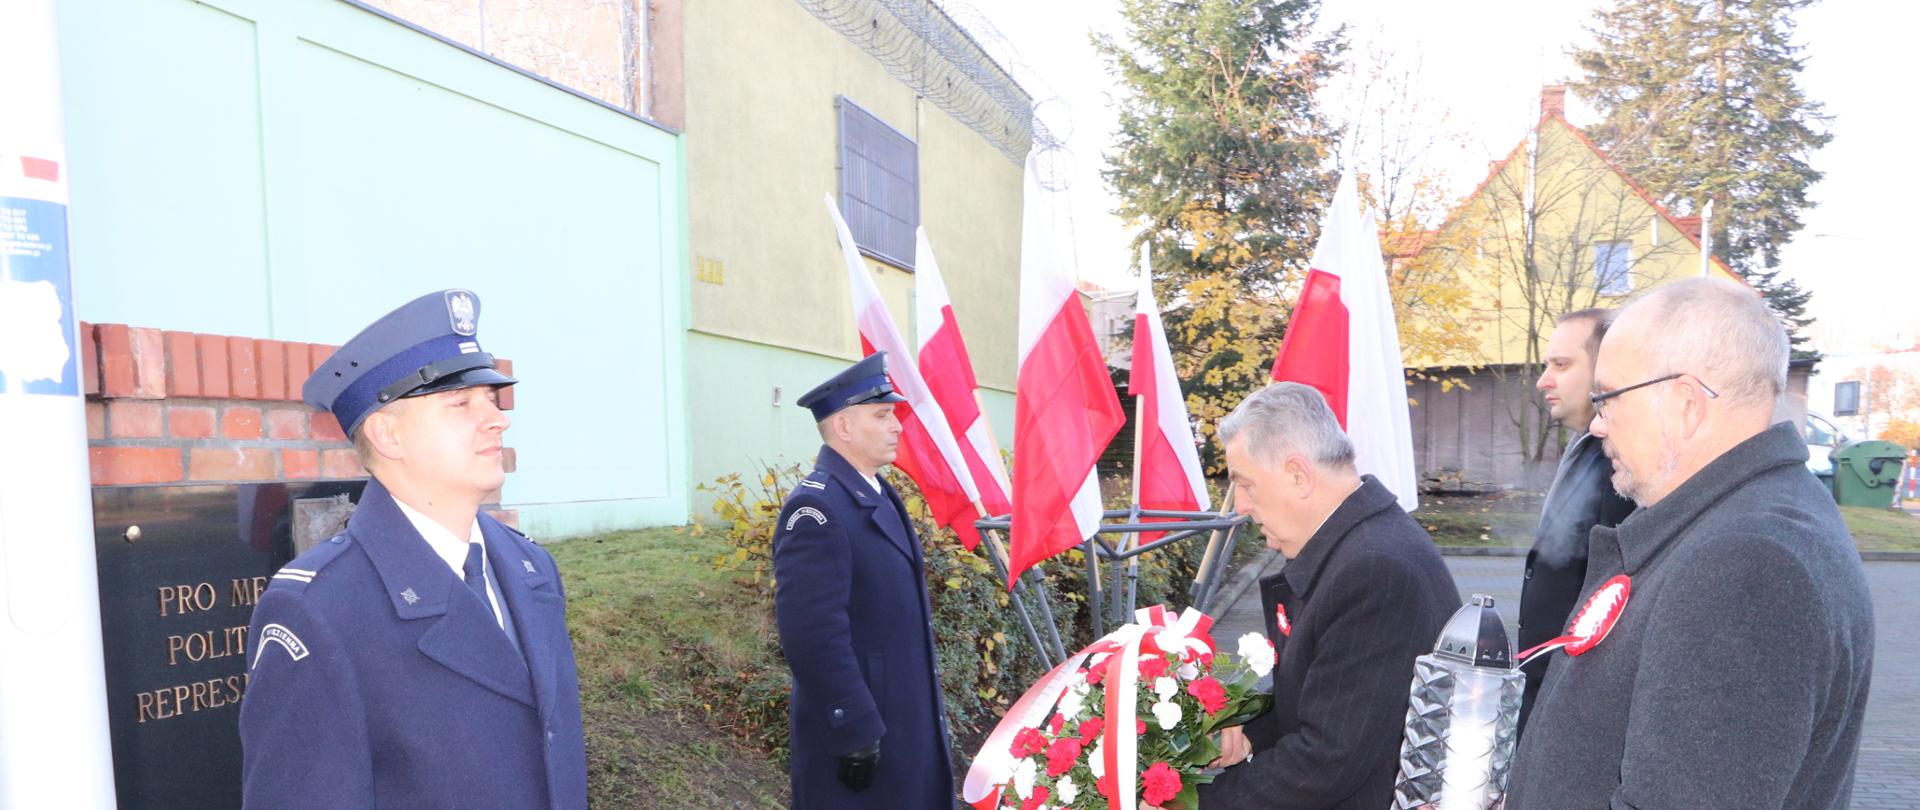 Wicewojewoda Lubuski Wojciech Perczak składa kwiaty z delegacją pod tablicą Pro Memoria więźniom politycznym i ofiarom represji komunistycznych przy Areszcie Śledczym w Zielonej Górze. 